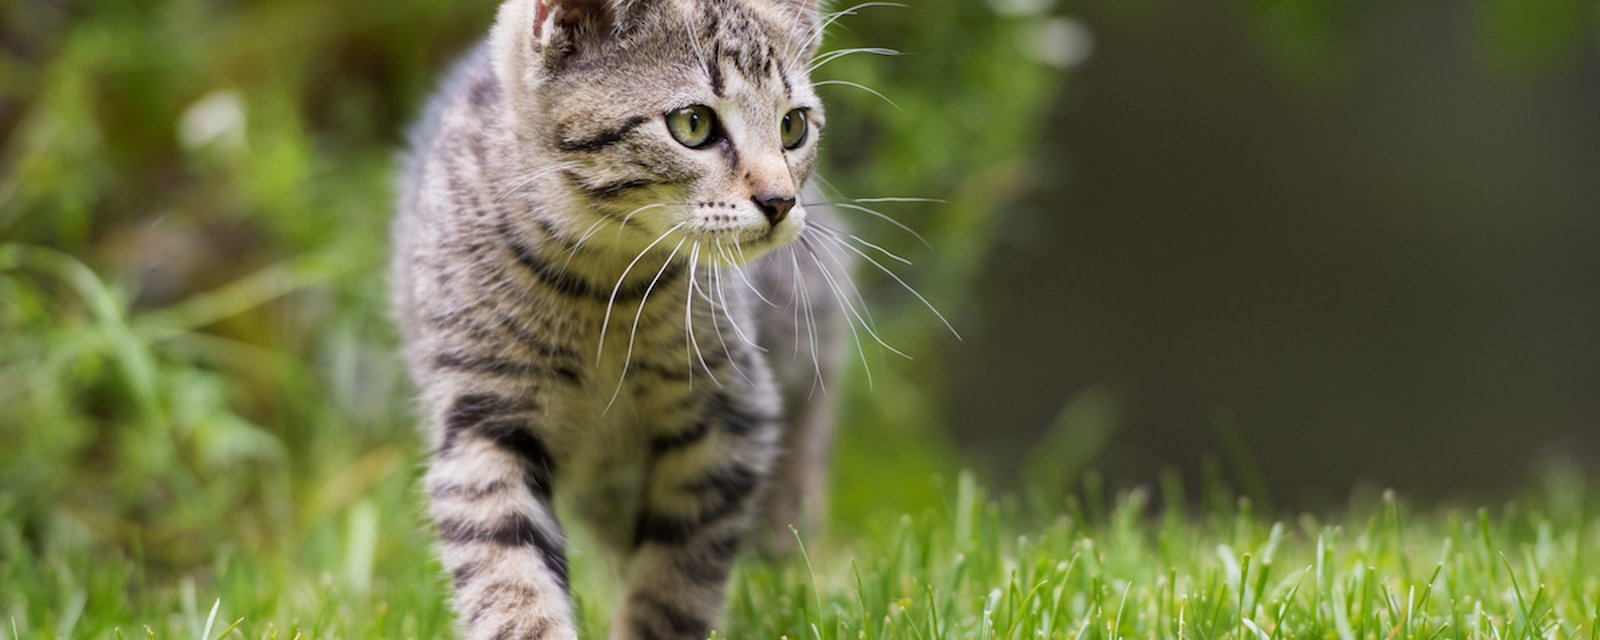 Conseil animalier: il vaut mieux empêcher votre chat de sortir de la maison